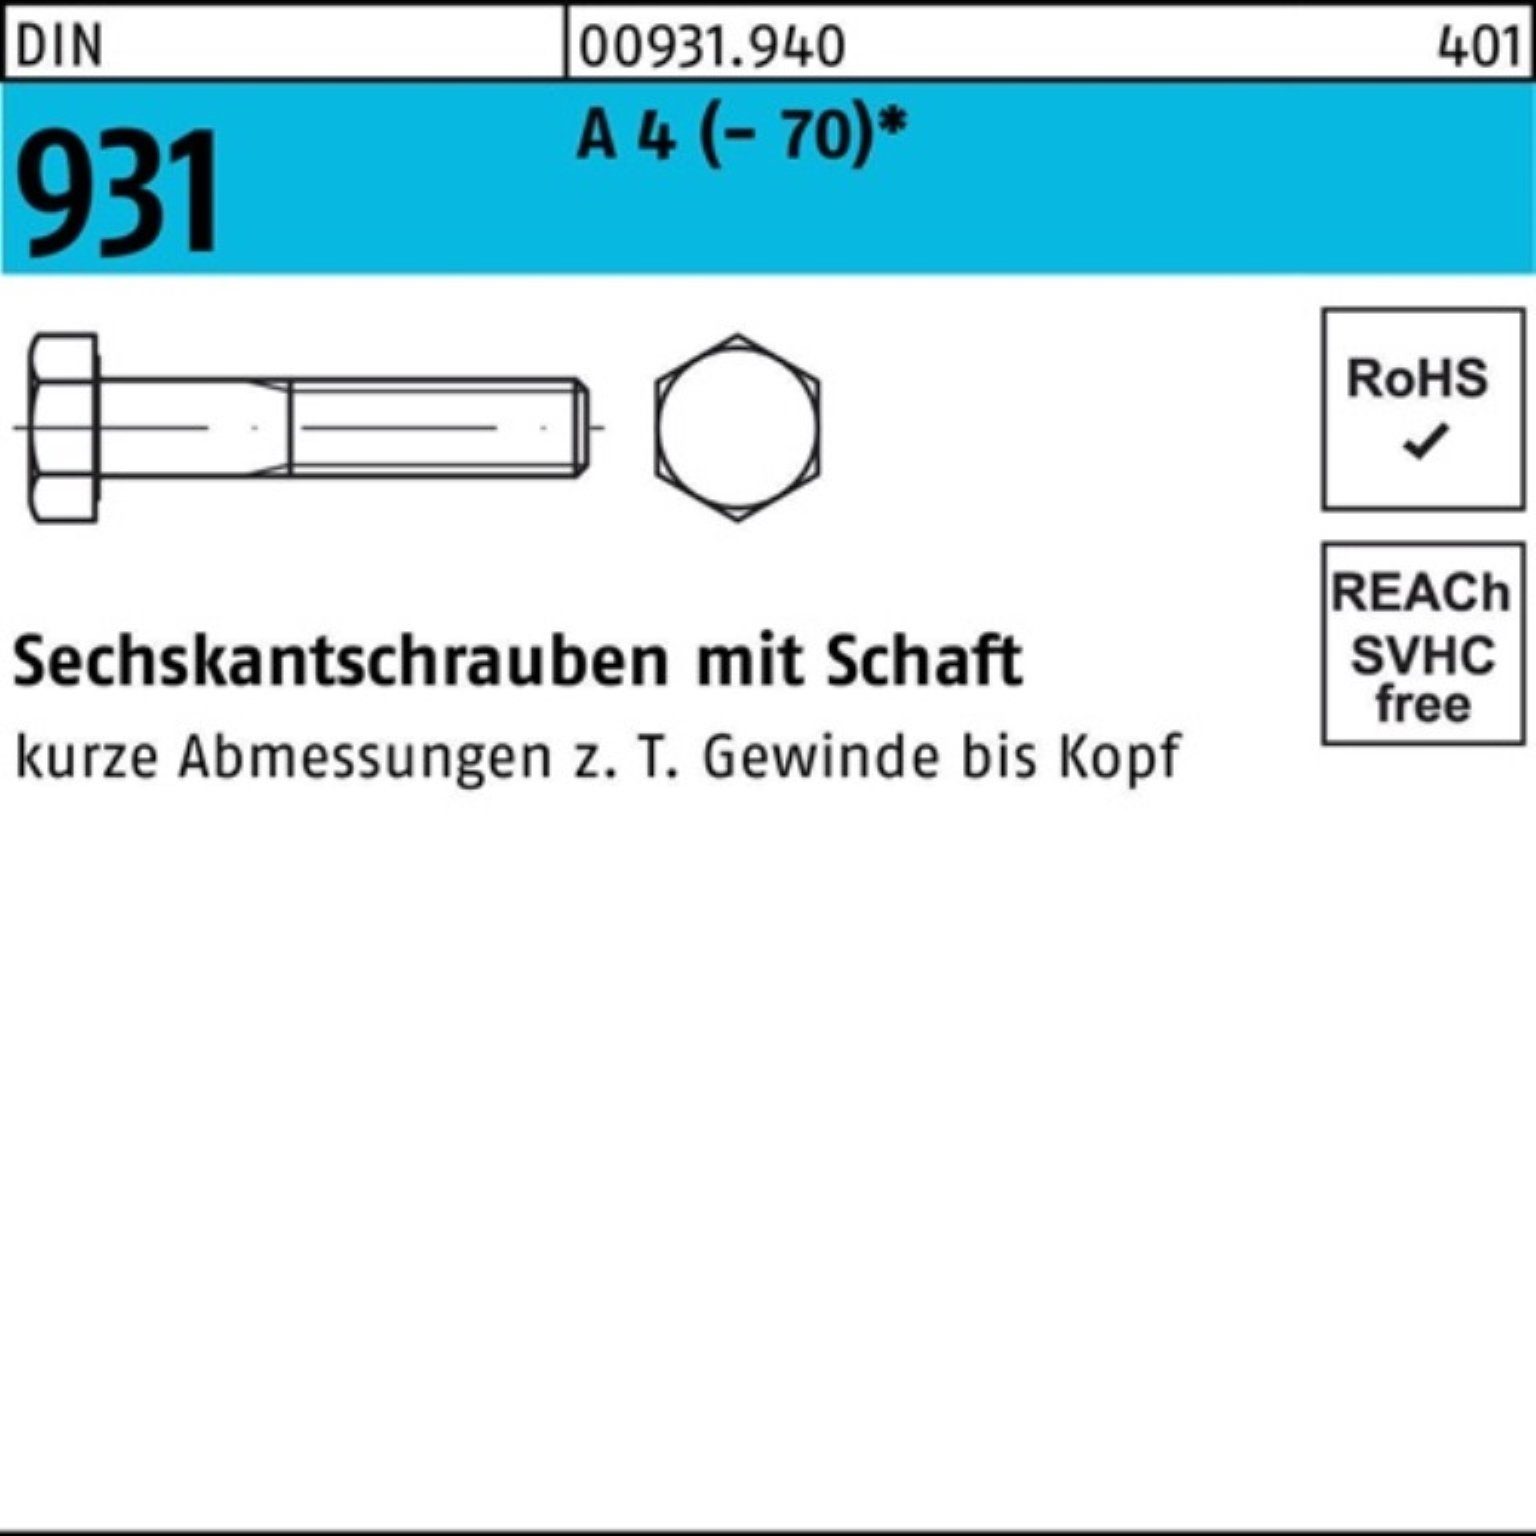 M33x (70) 1 100er A 130 4 Pack Reyher Schaft Sechskantschraube DIN Sechskantschraube 931 Stü